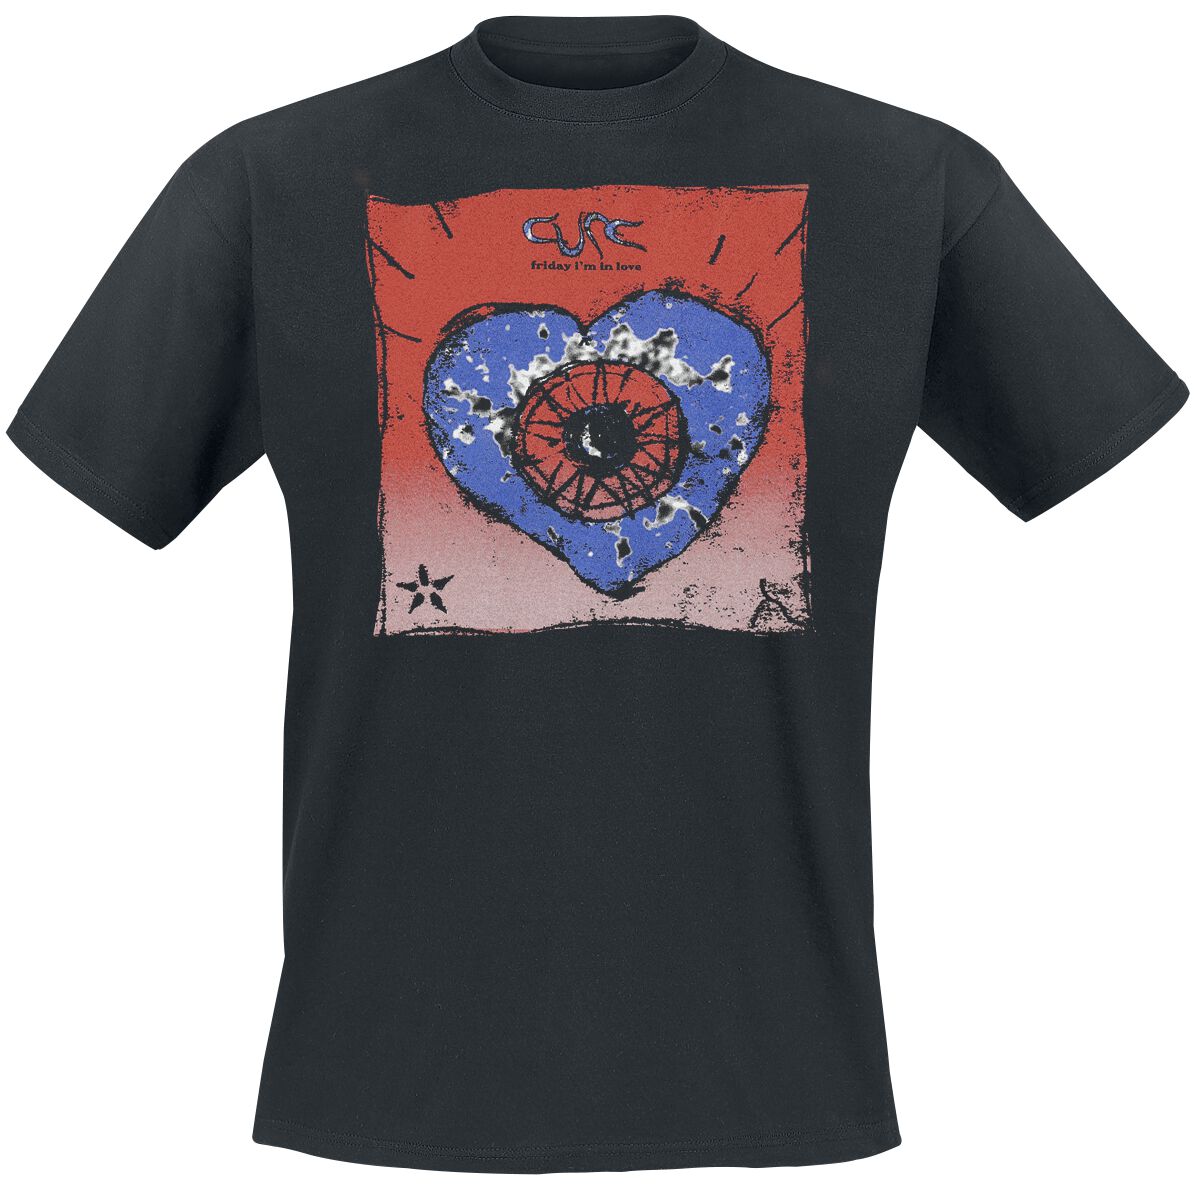 The Cure T-Shirt - Friday I`m In Love - S bis 4XL - für Männer - Größe XXL - schwarz  - Lizenziertes Merchandise!